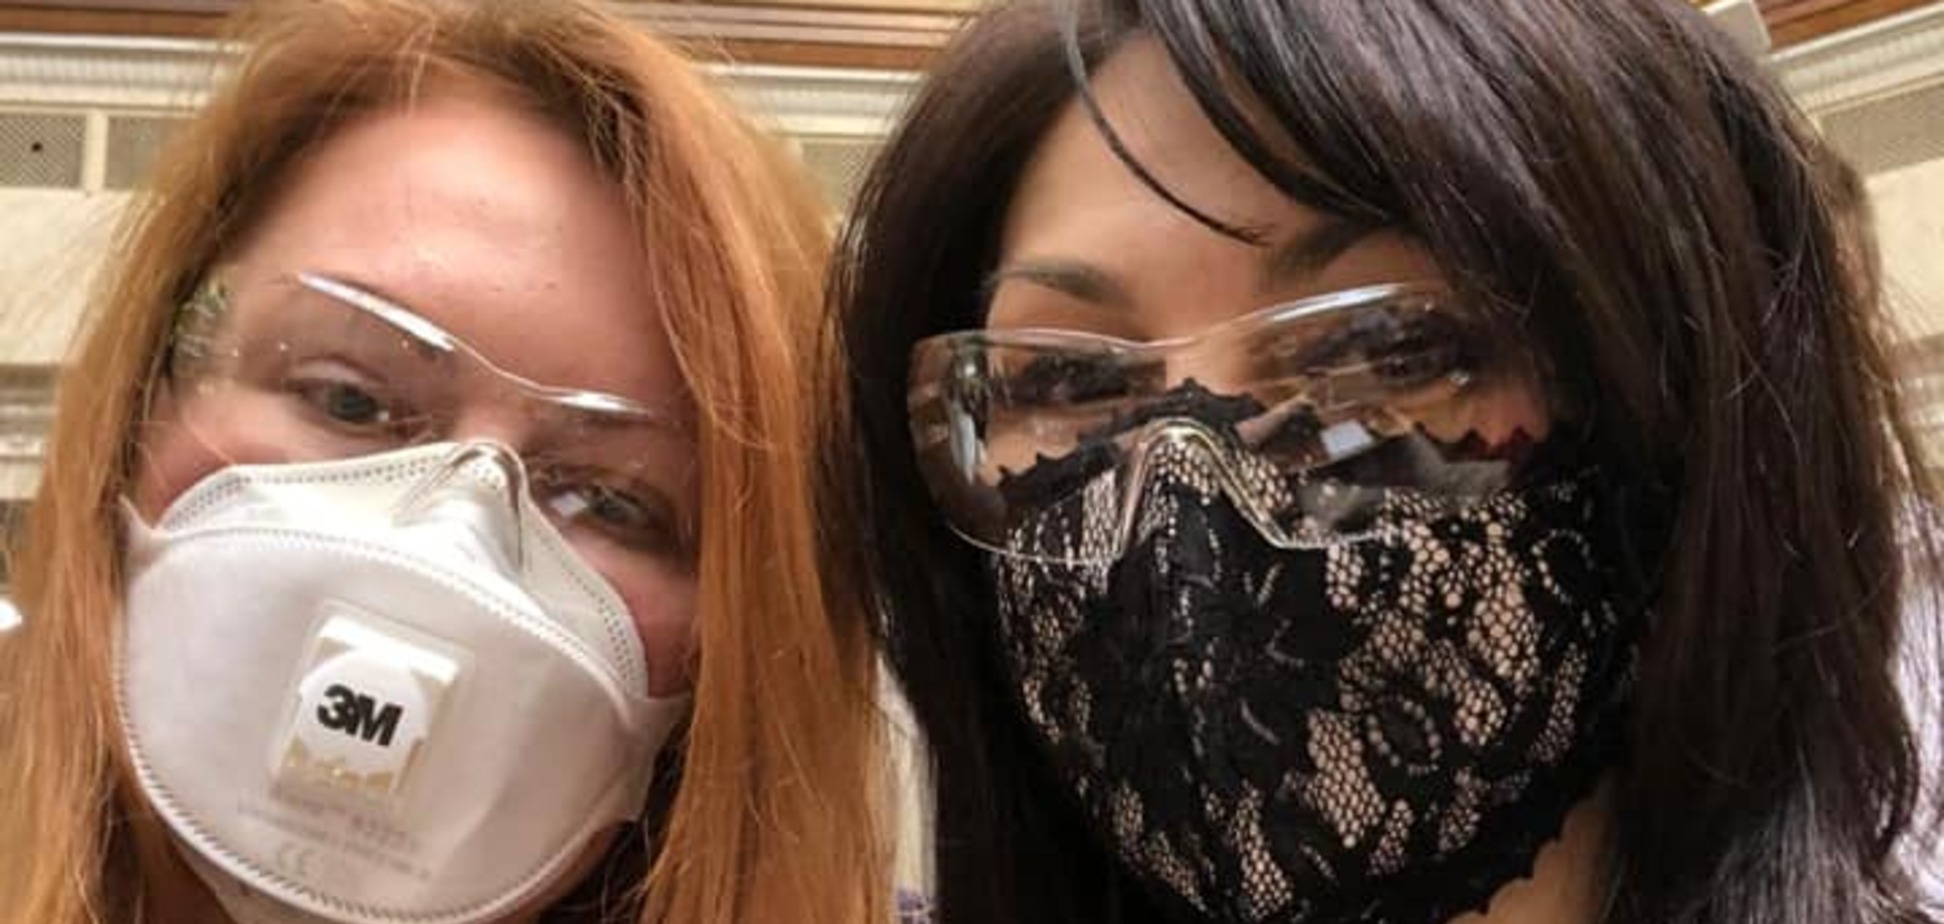 Нардеп Людмила Марченко вызвала ажиотаж дизайнерским кружевом на лице. Фото и видео